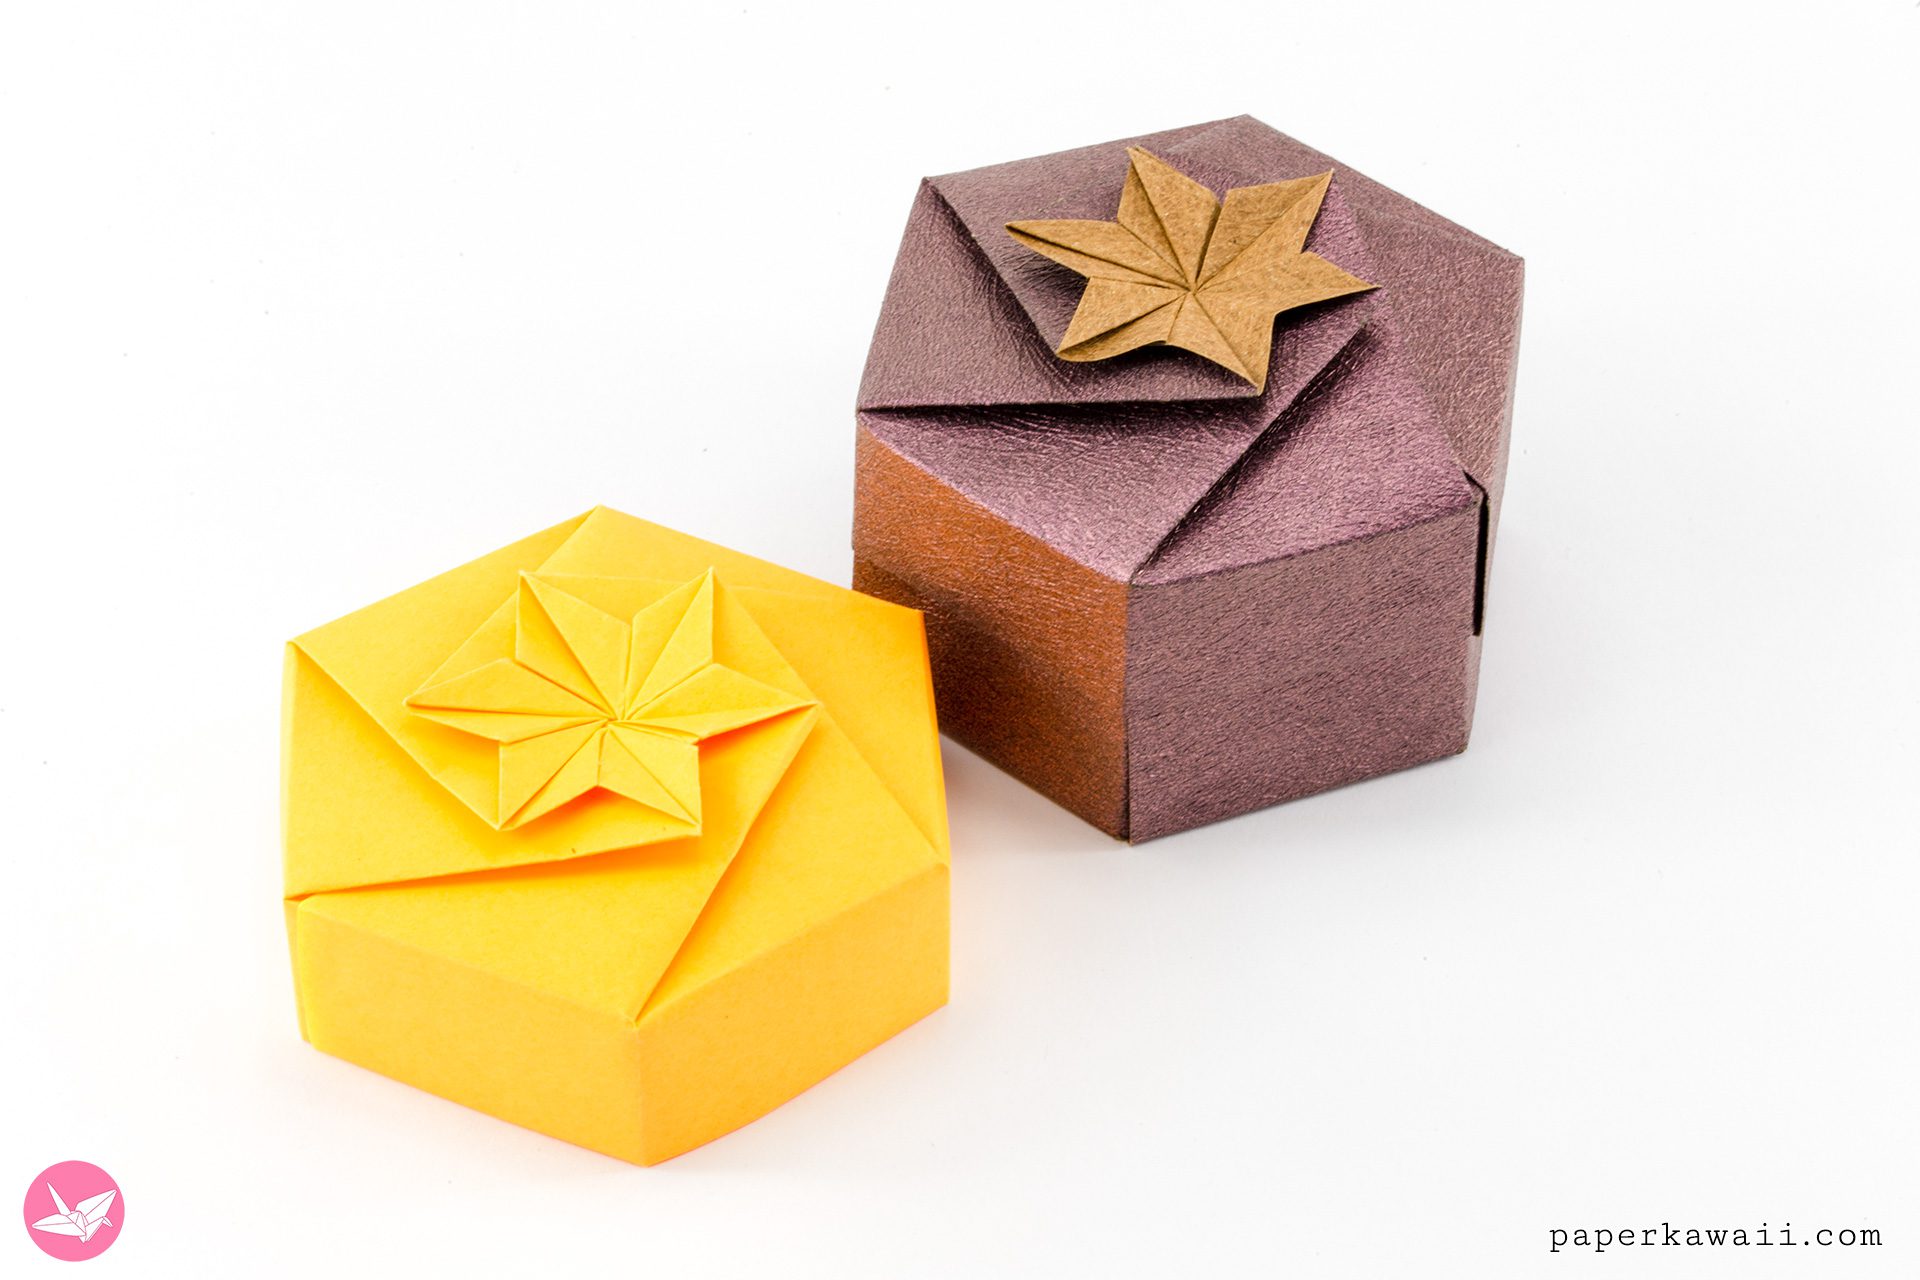 Origami Hexagonal Gift Box